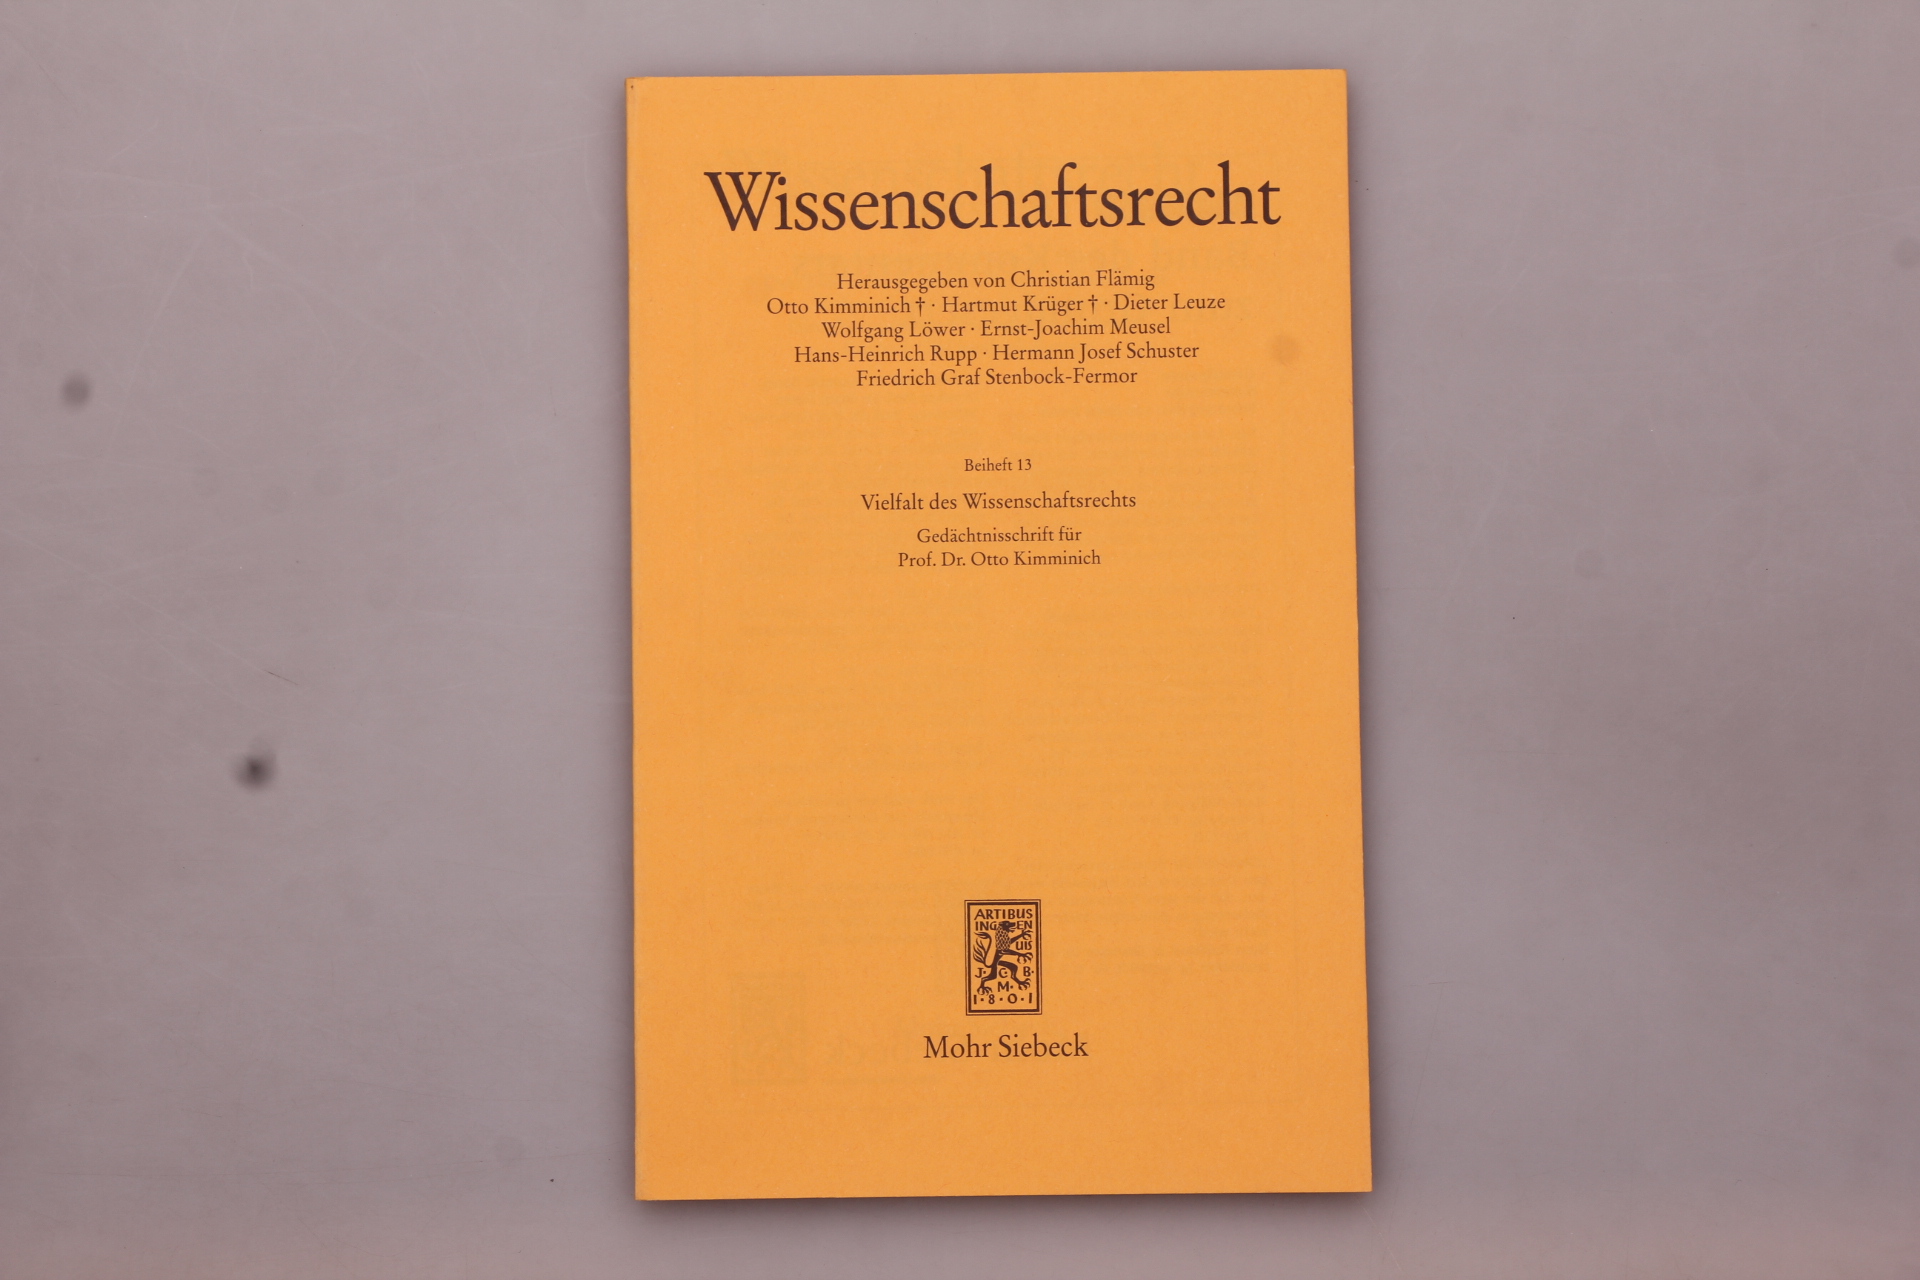 VIELFALT DES WISSENSCHAFTSRECHTS. Gedächtnisschrift für Prof. Dr. Otto Kimminich - [Hrsg.]: Flämig, Christian